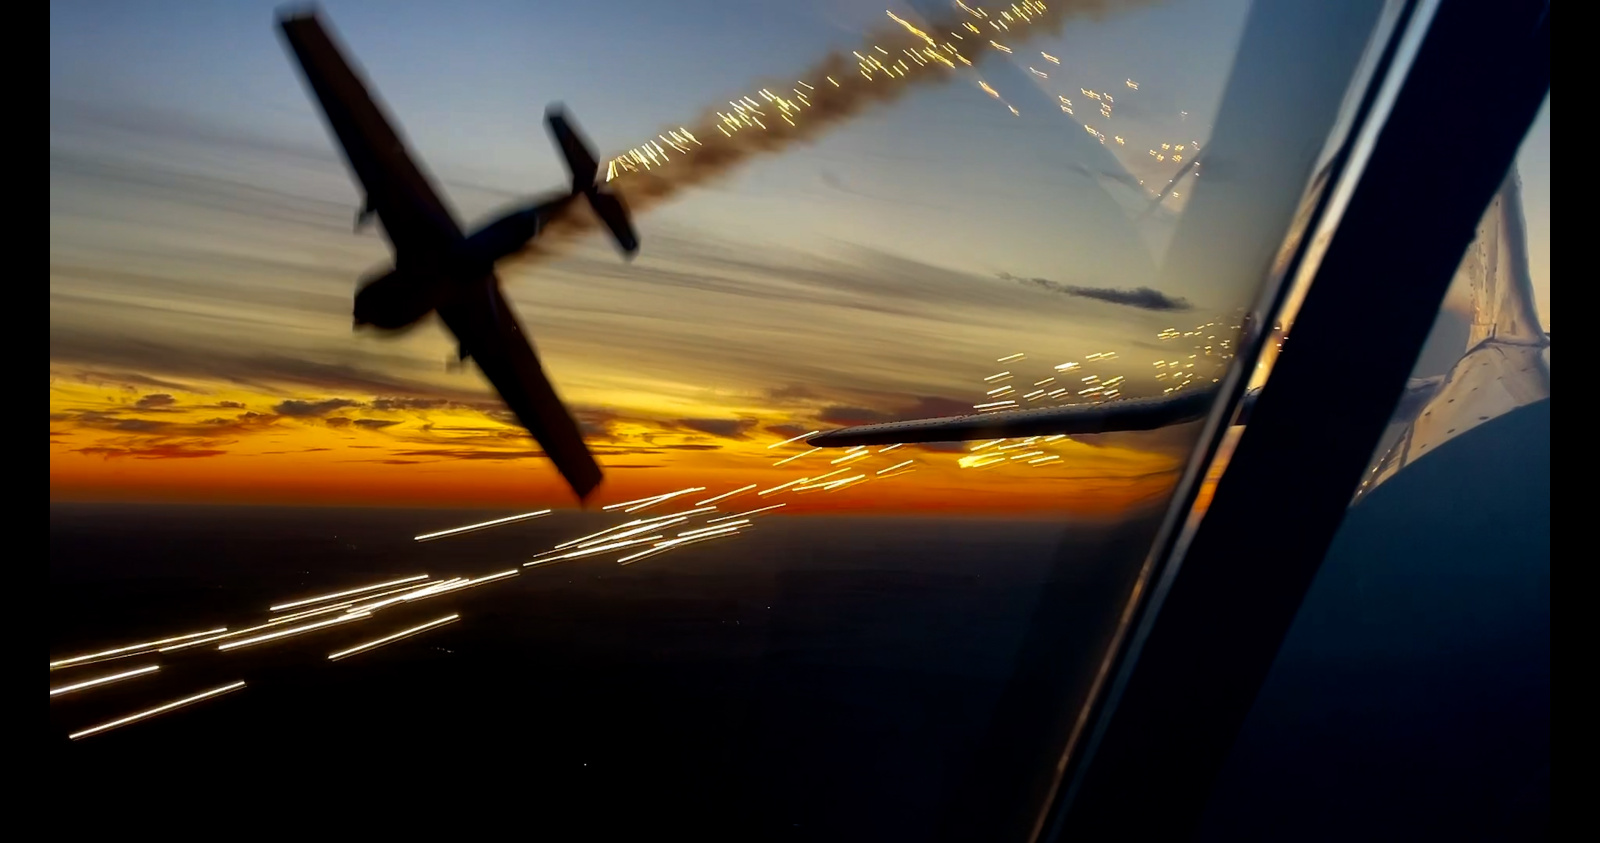 Авиашоу на закате от пилотажной группы "Первый полет"